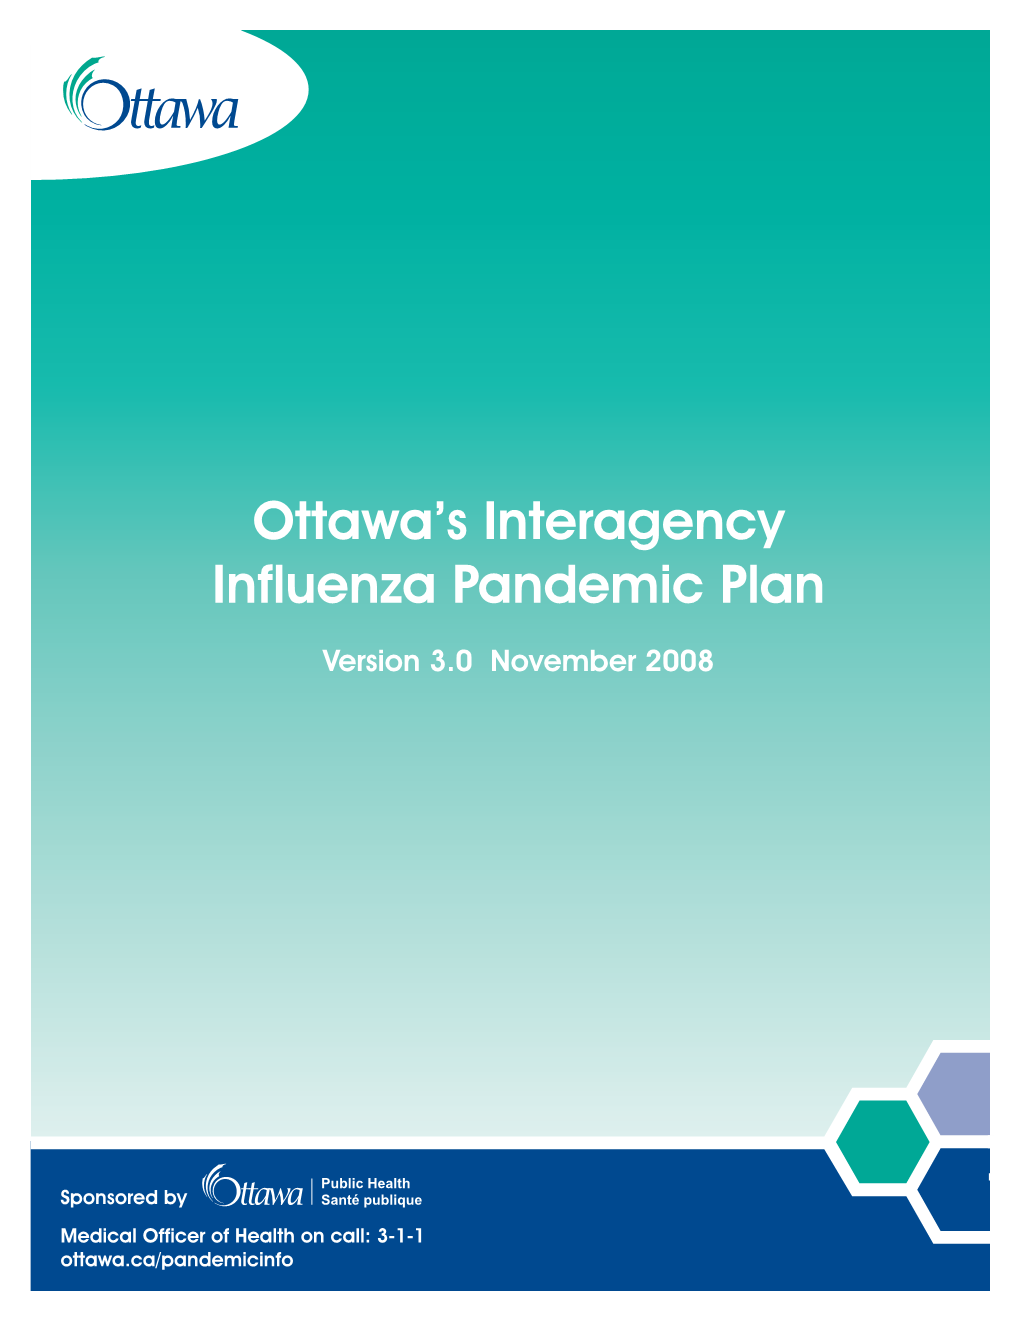 Strengthening Ottawa's Influenza Pandemic Plan